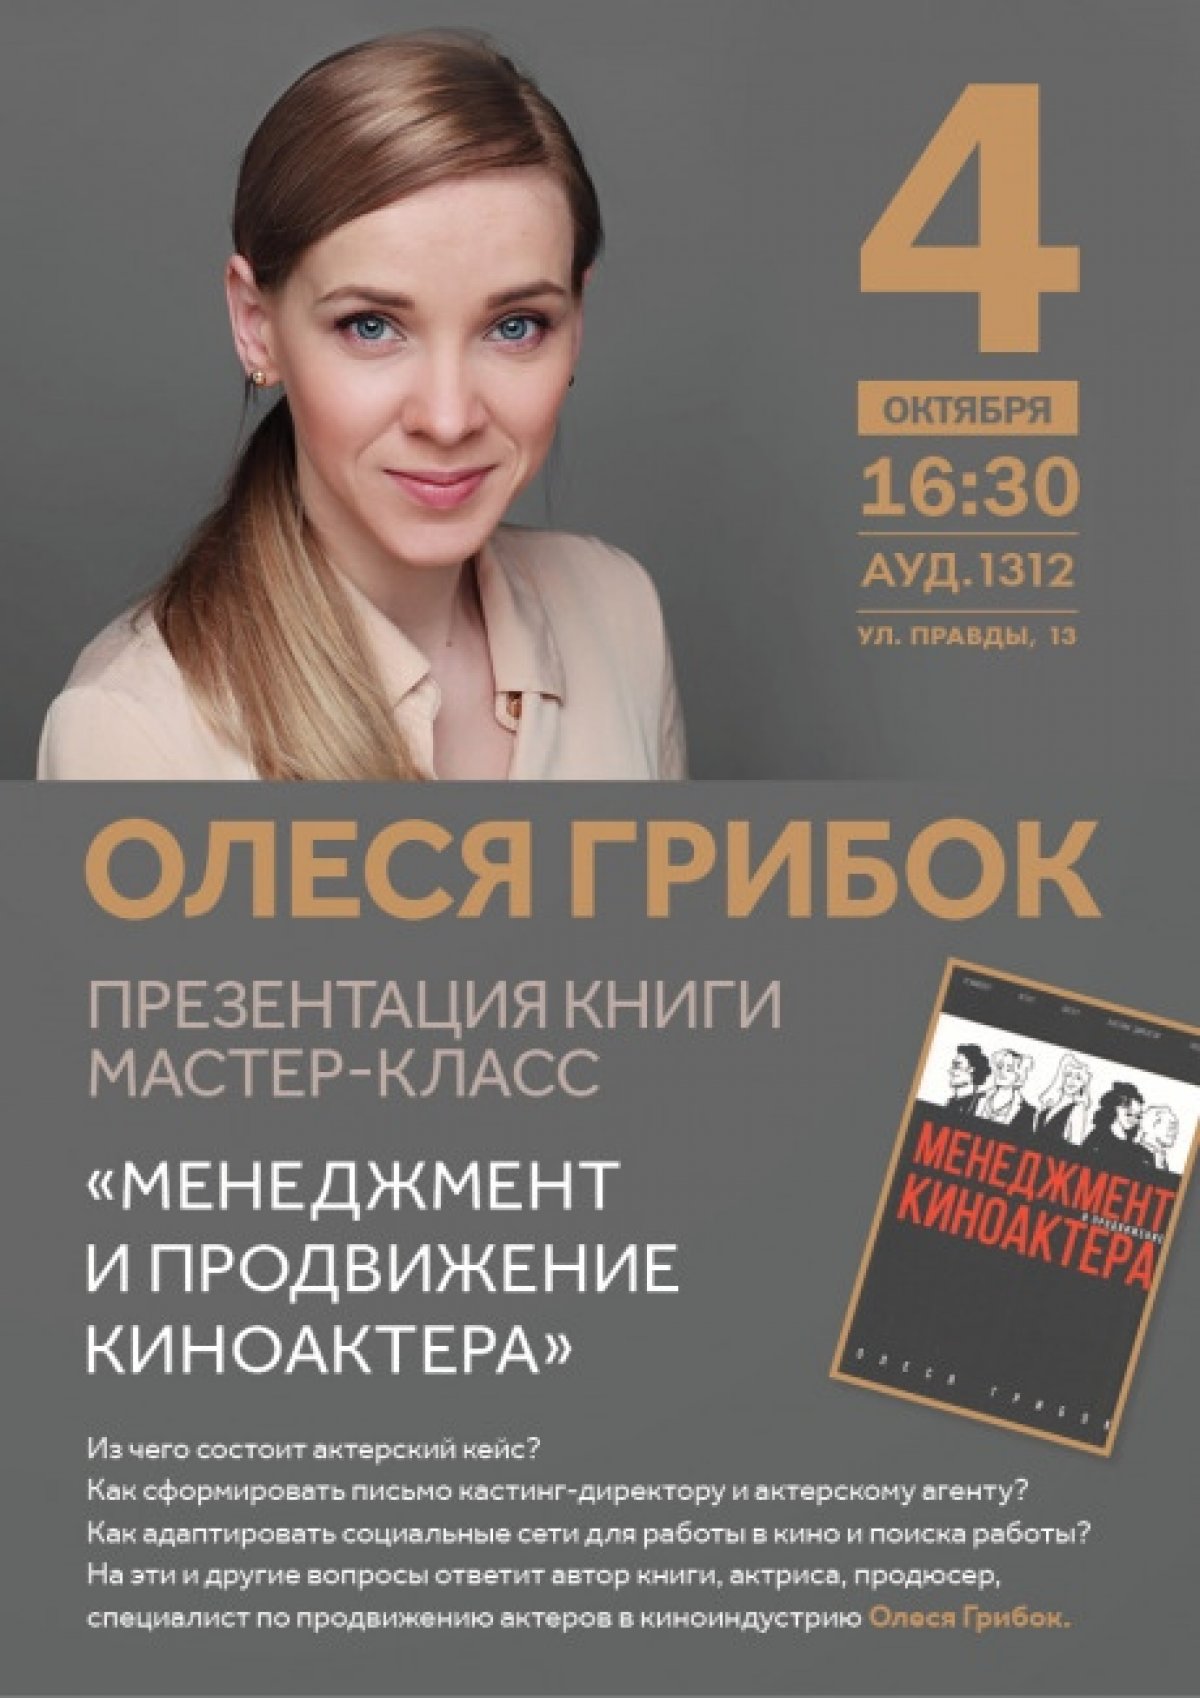 «Менеджмент и продвижение актера» презентация книги и мастер-класс Олеси Грибок